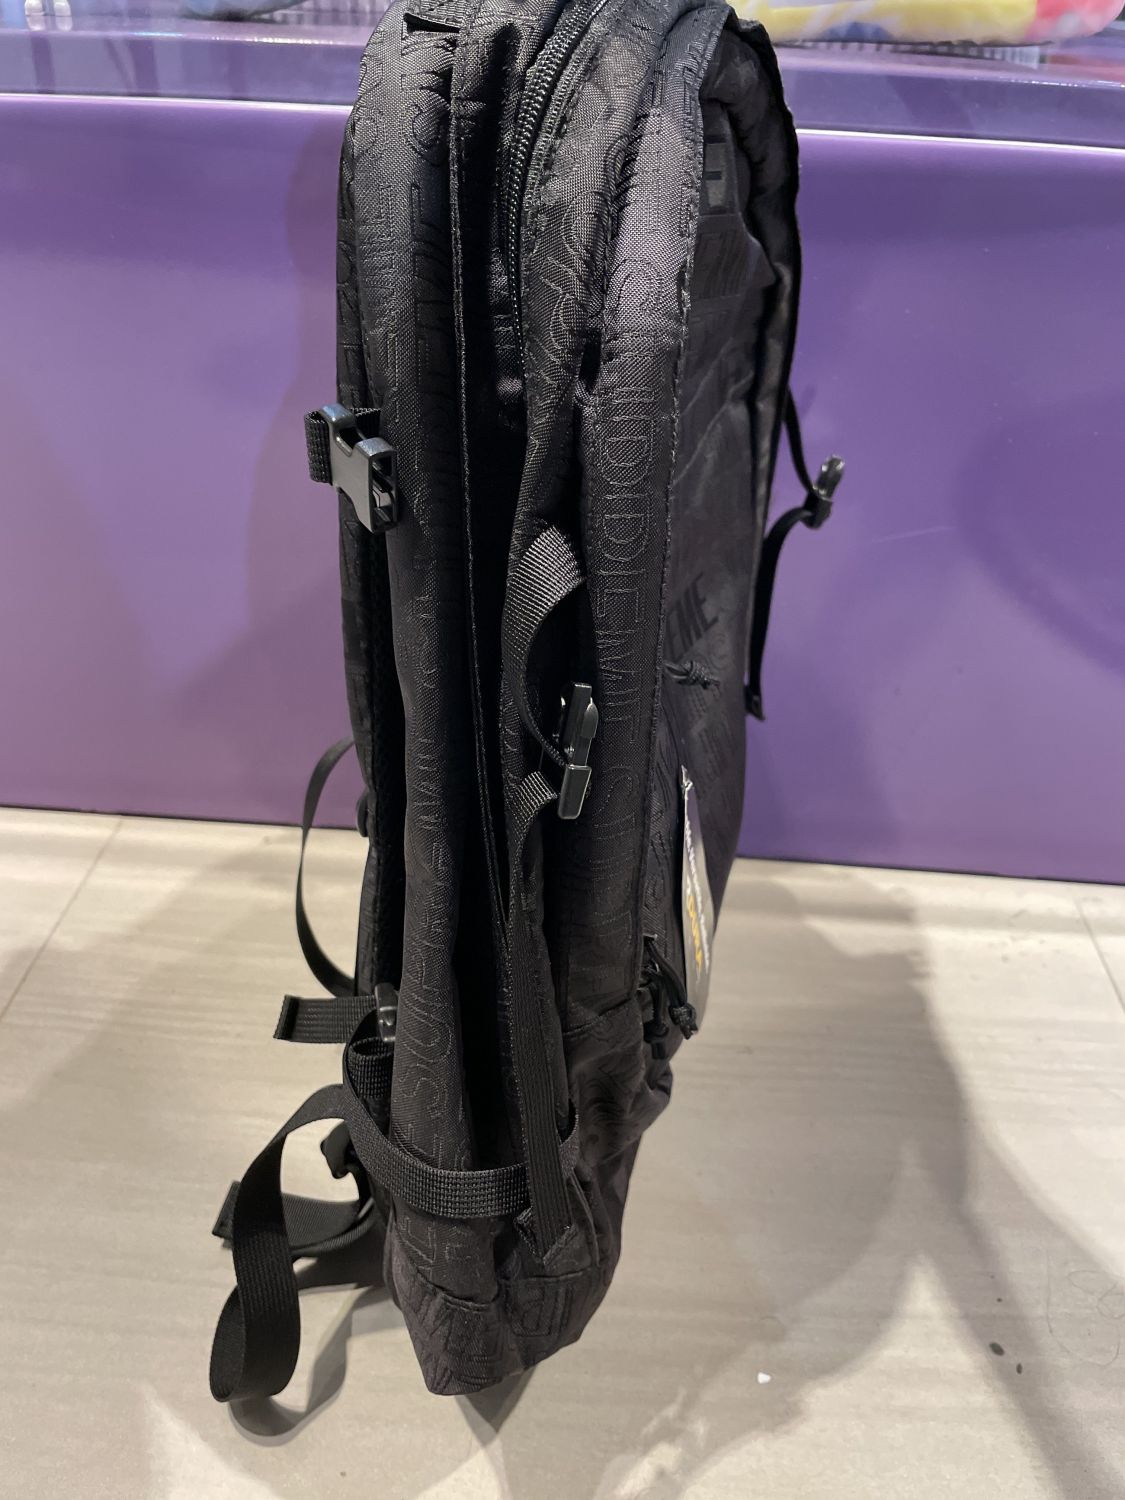 QC] Supreme Backpack (SS19) Black : r/FashionReps